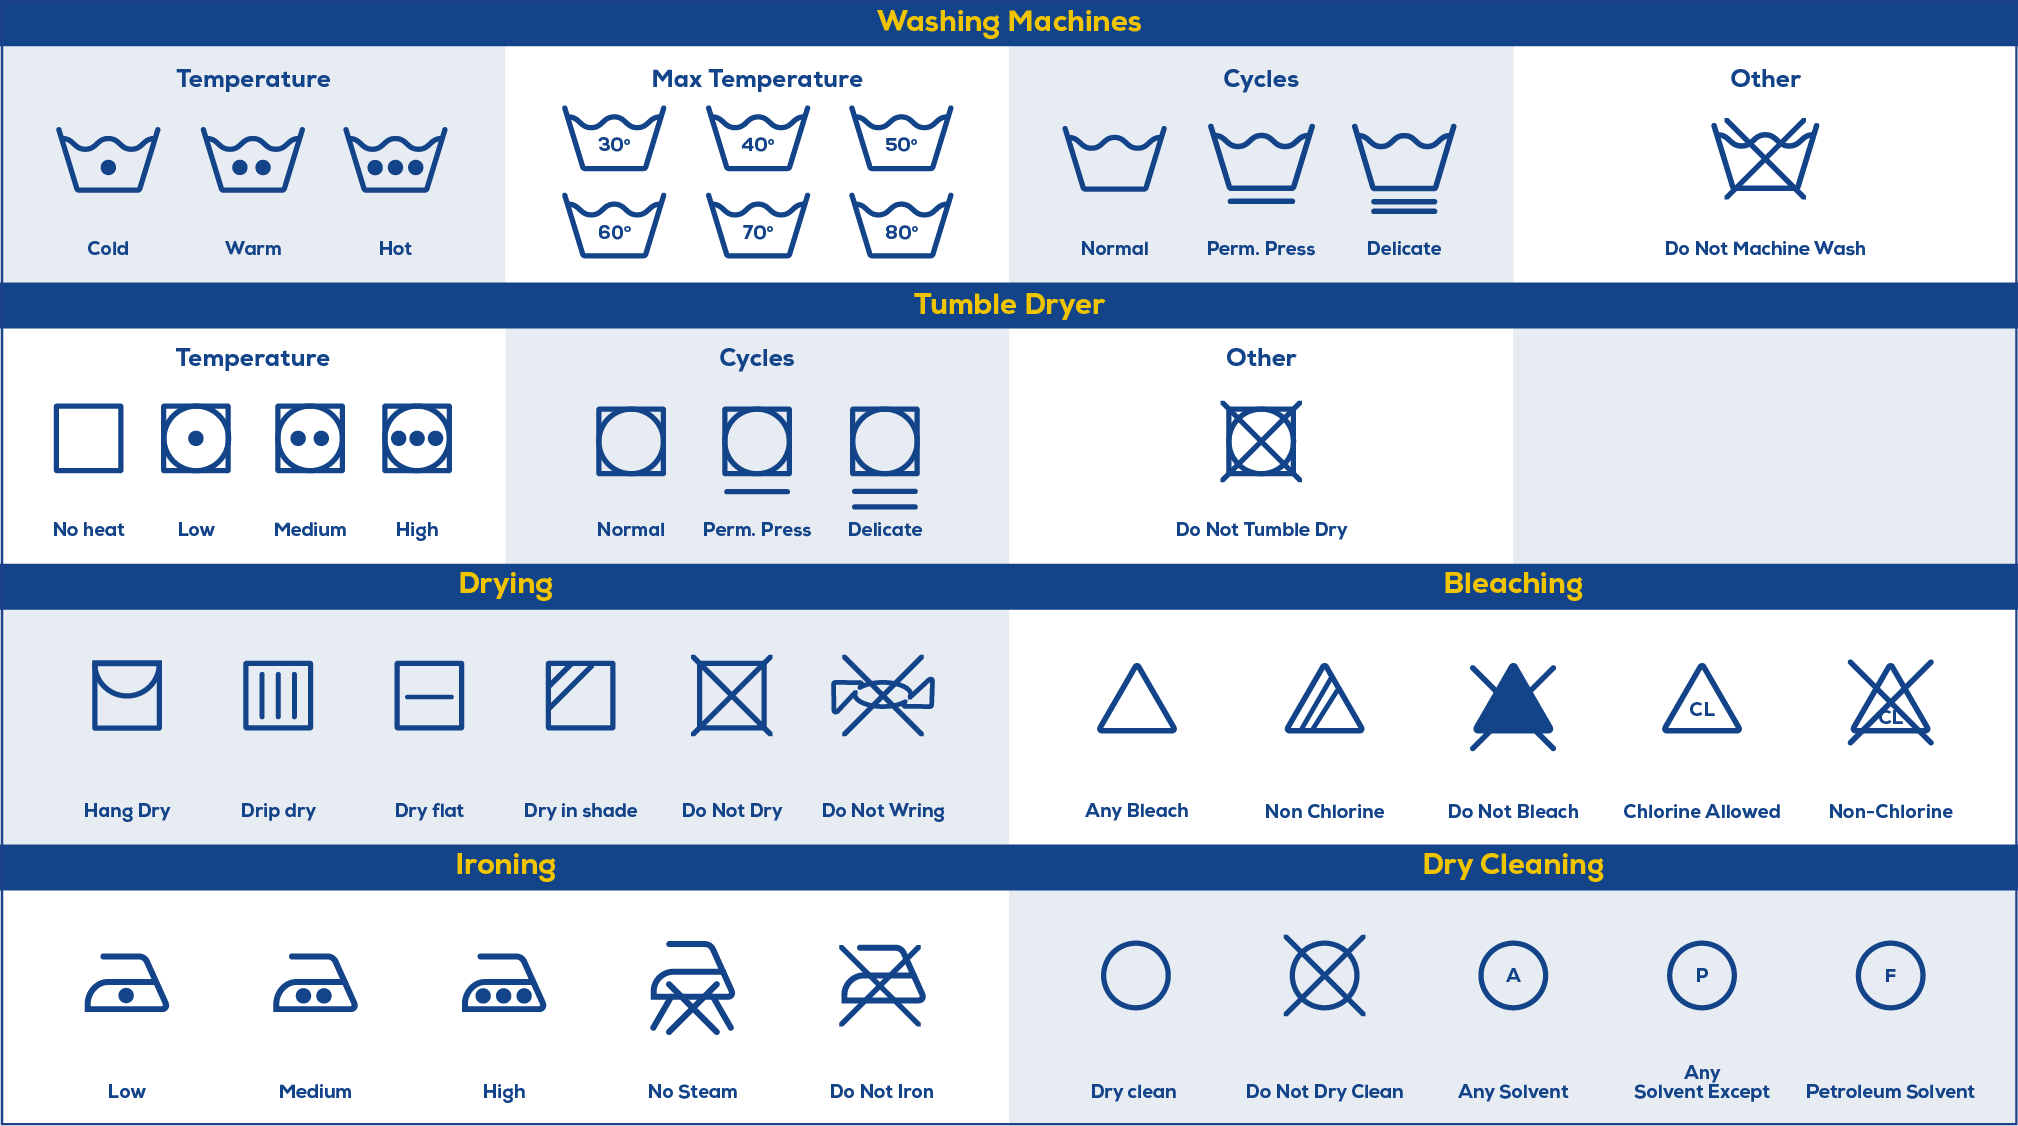 laundry symbols explained